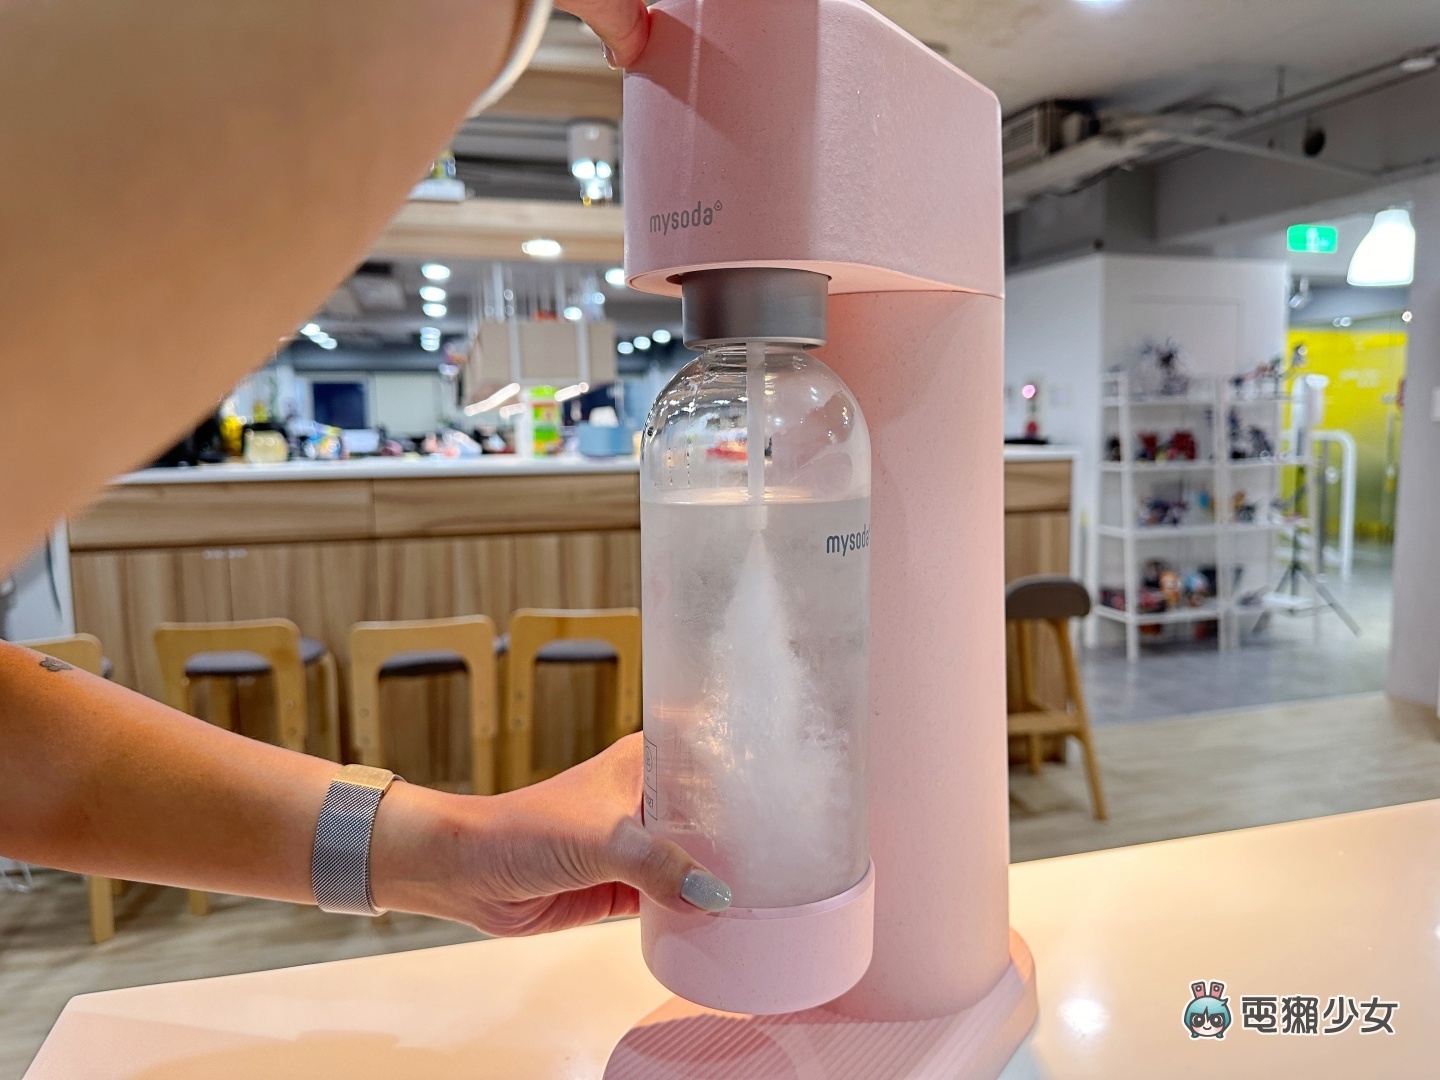 3 分鐘輕鬆自製氣泡水！外觀超好看的 Mysoda Woody 氣泡水機上手開箱